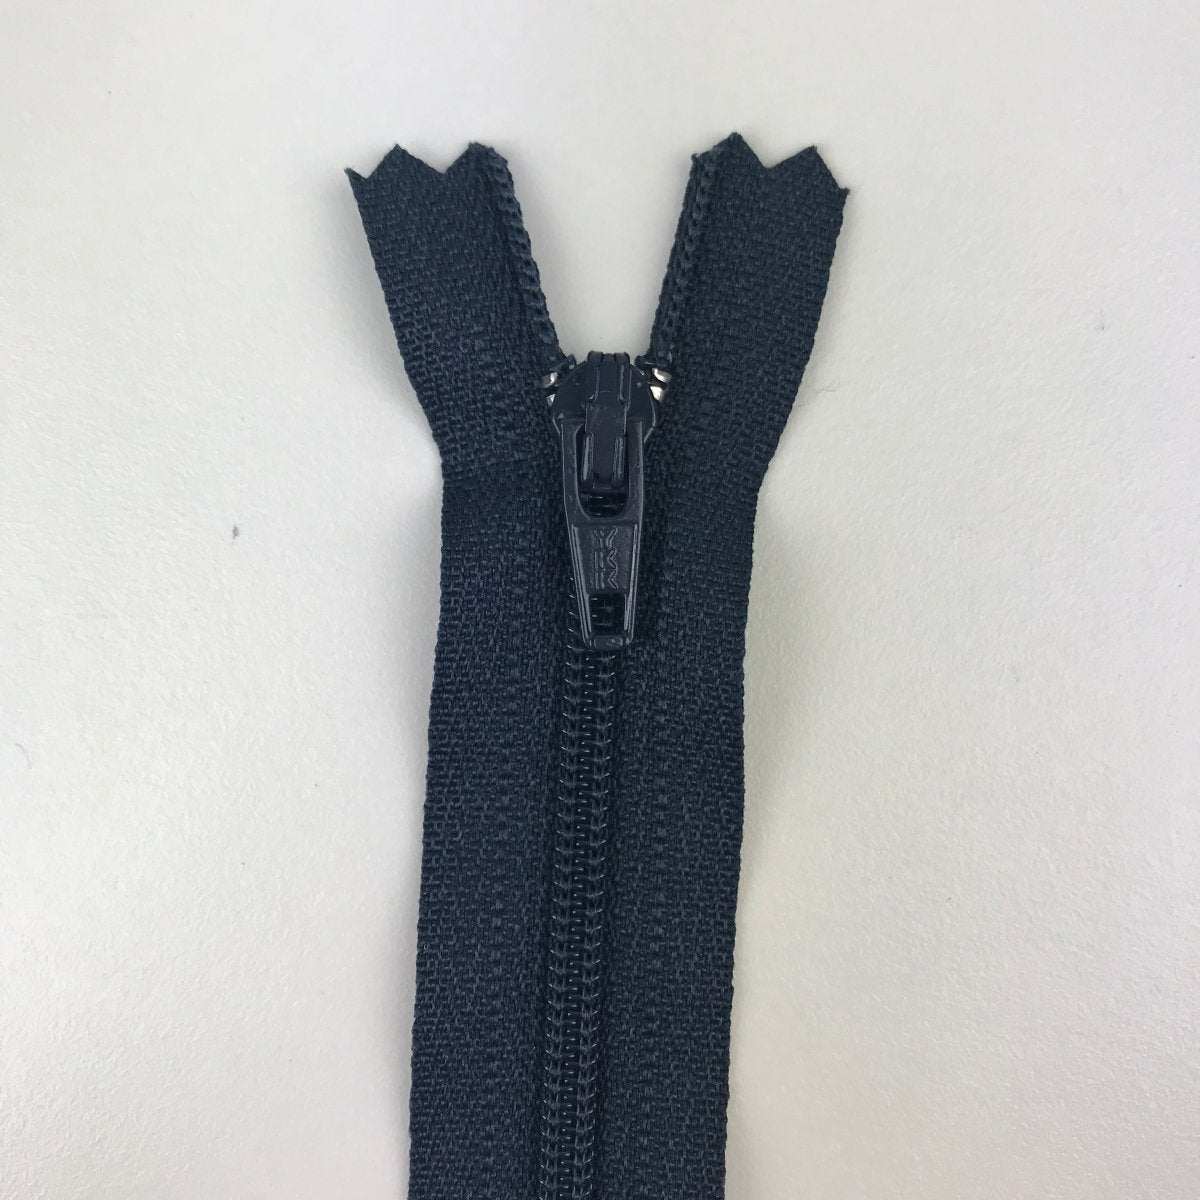 YKK Zipper - Skirt and Dress - 40.5cm (16") - Sewing Gem